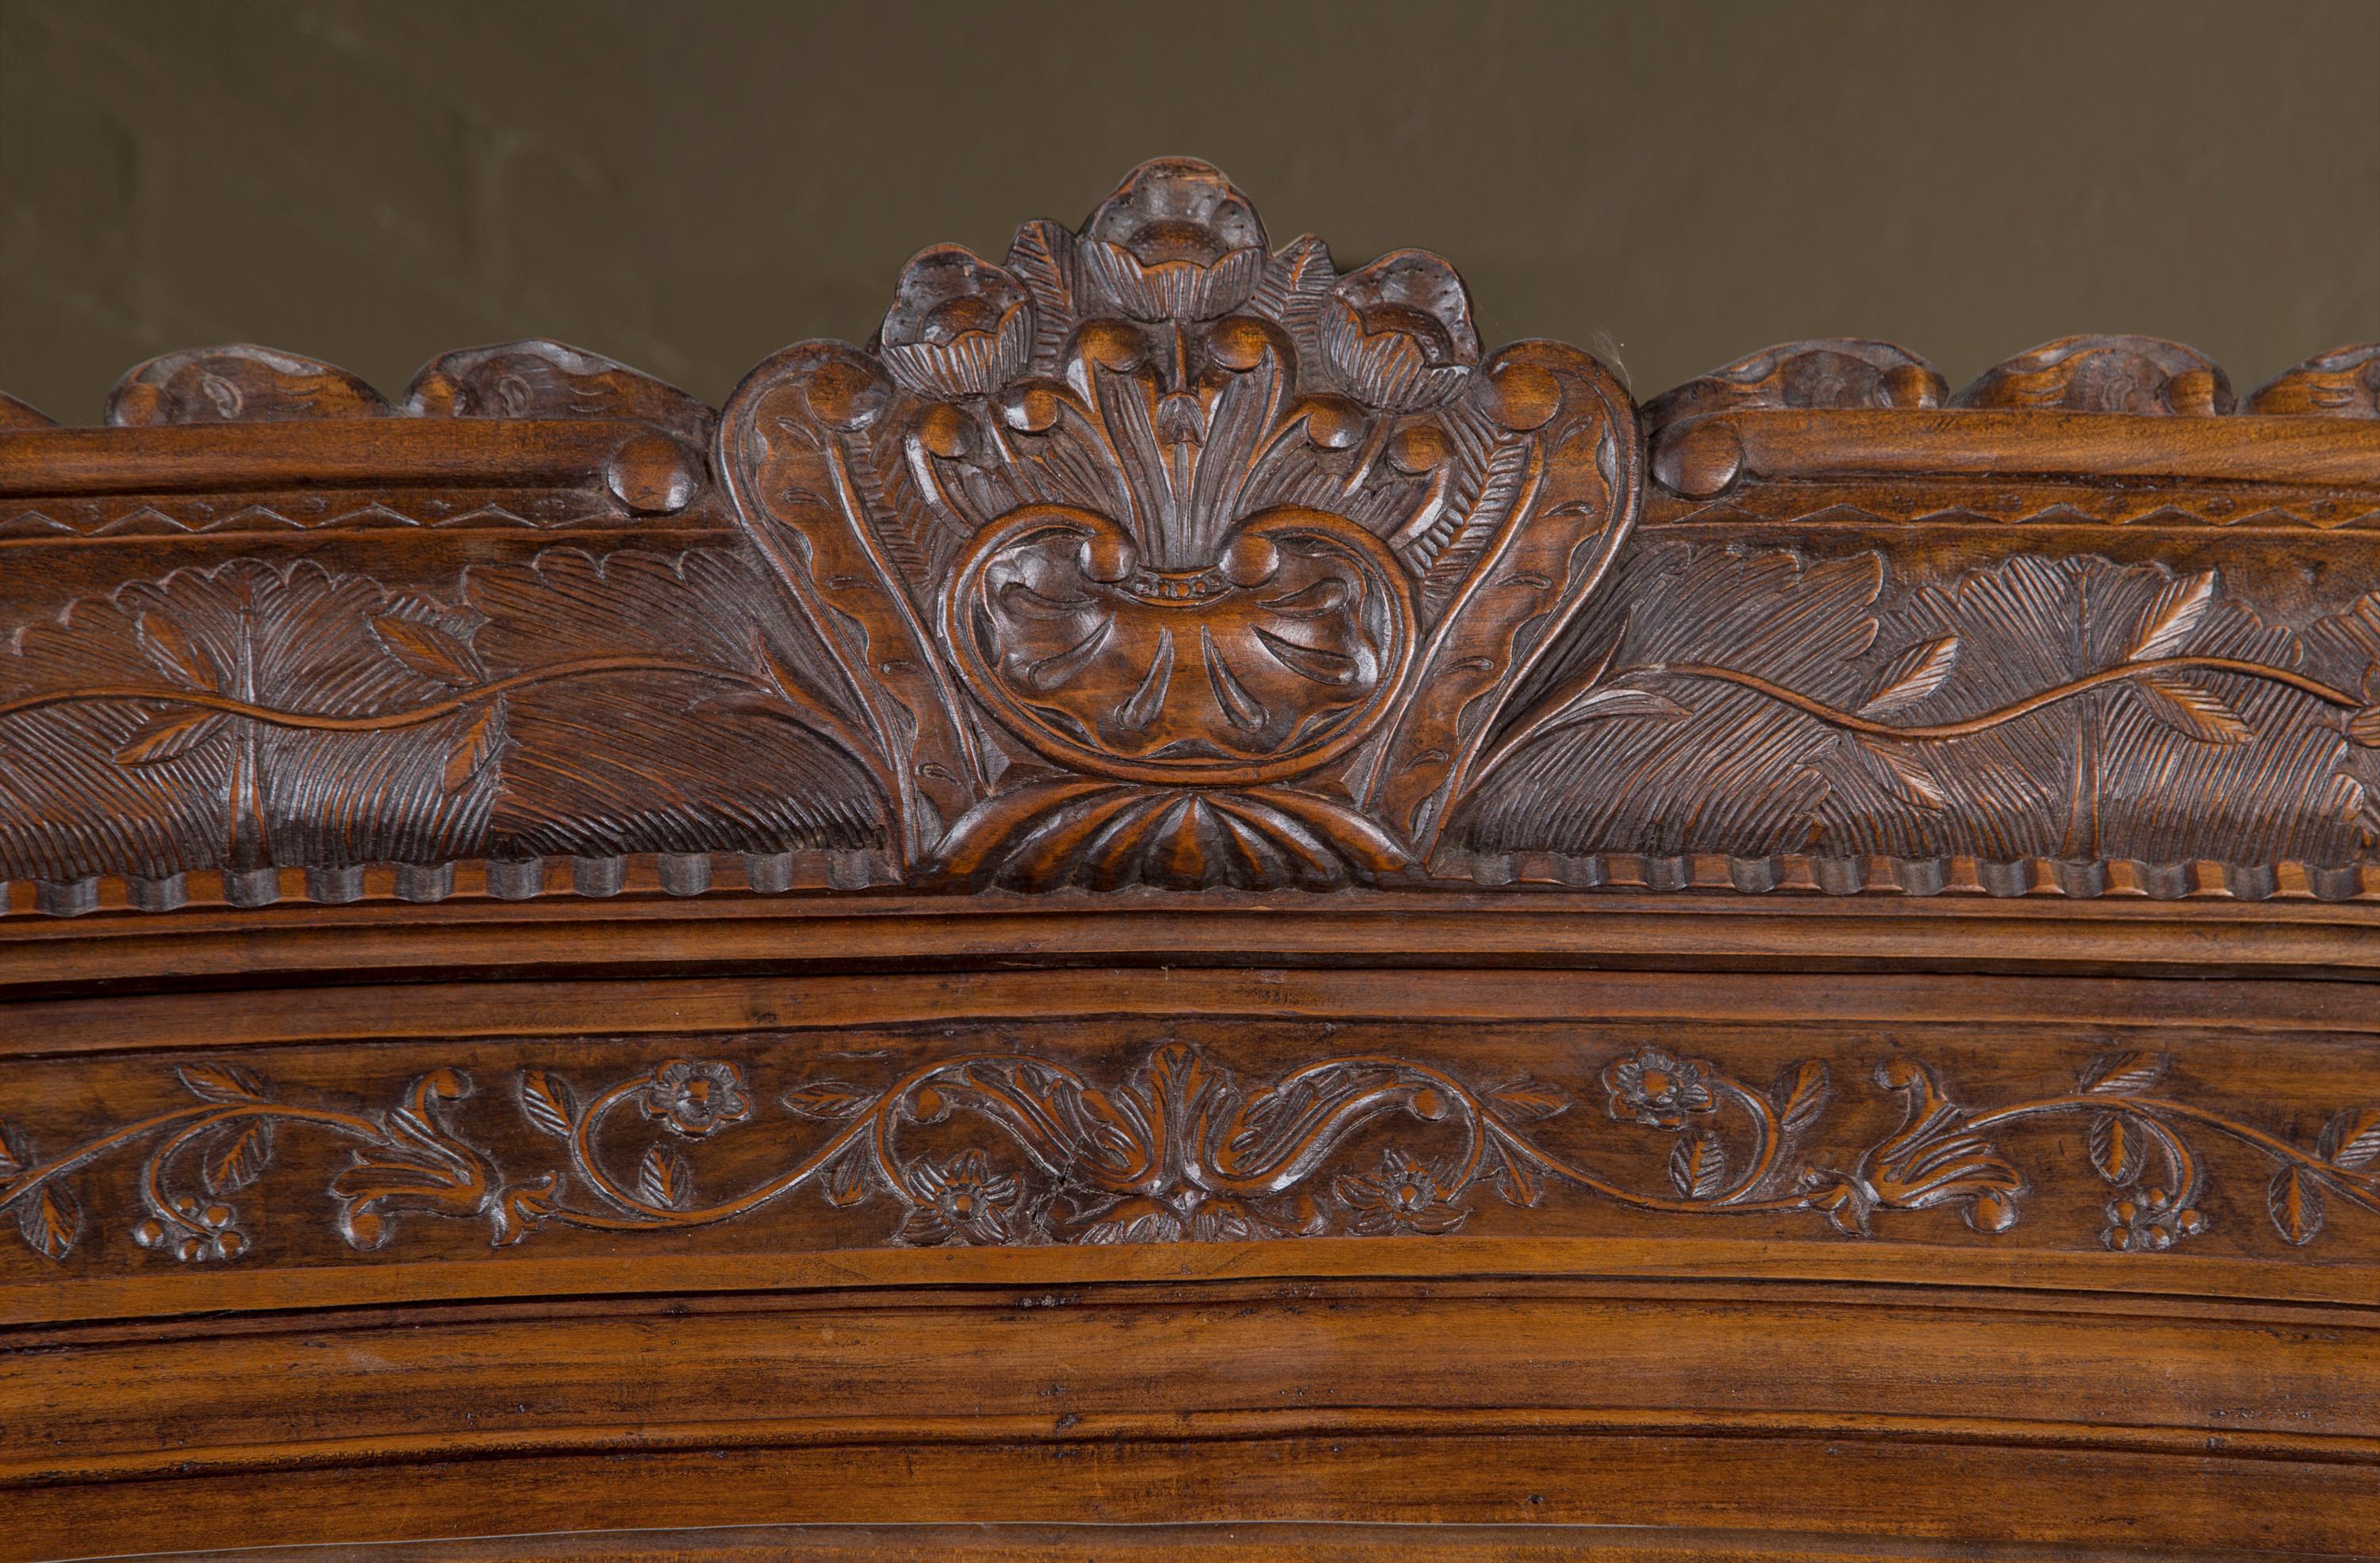 Ce meuble d'angle Louis XV en noyer date du 19e siècle, vers 1830. La pièce présente une sculpture florale incroyablement élaborée, accompagnée d'une quincaillerie en bronze ciselé à la main. Le meuble comporte un tiroir inférieur et une porte